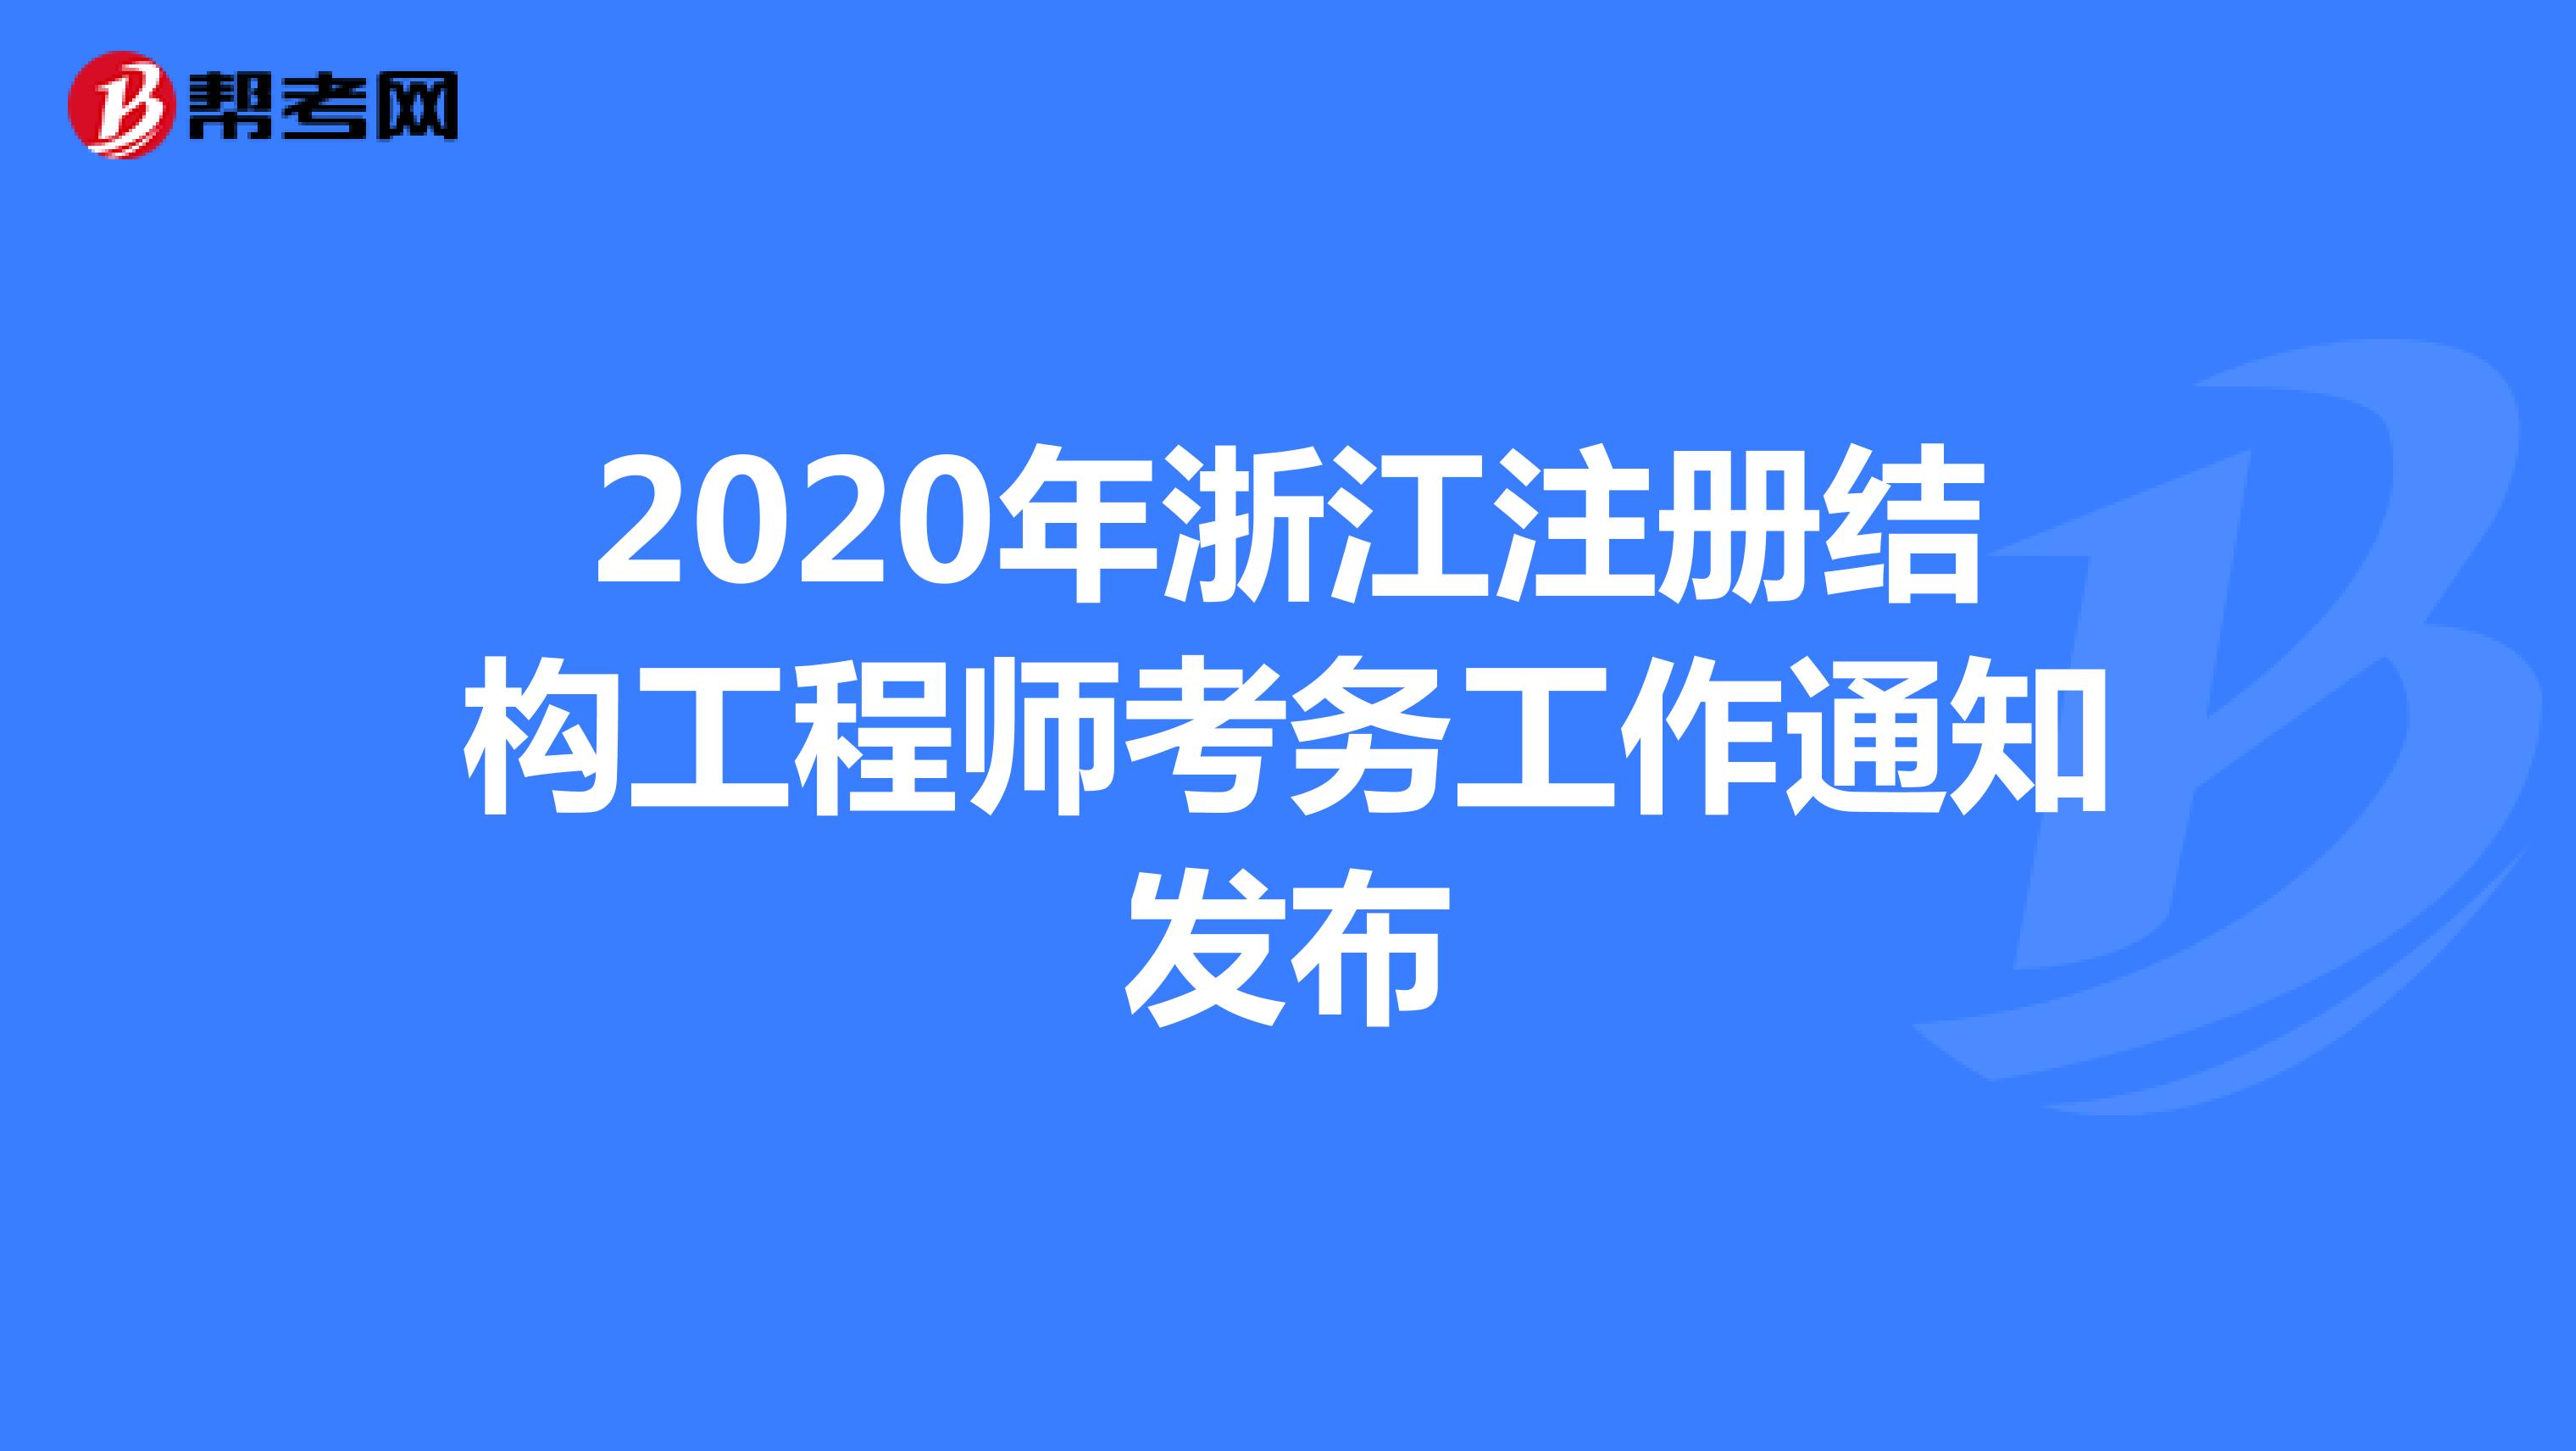 2020年浙江注册结构工程师考务工作通知发布